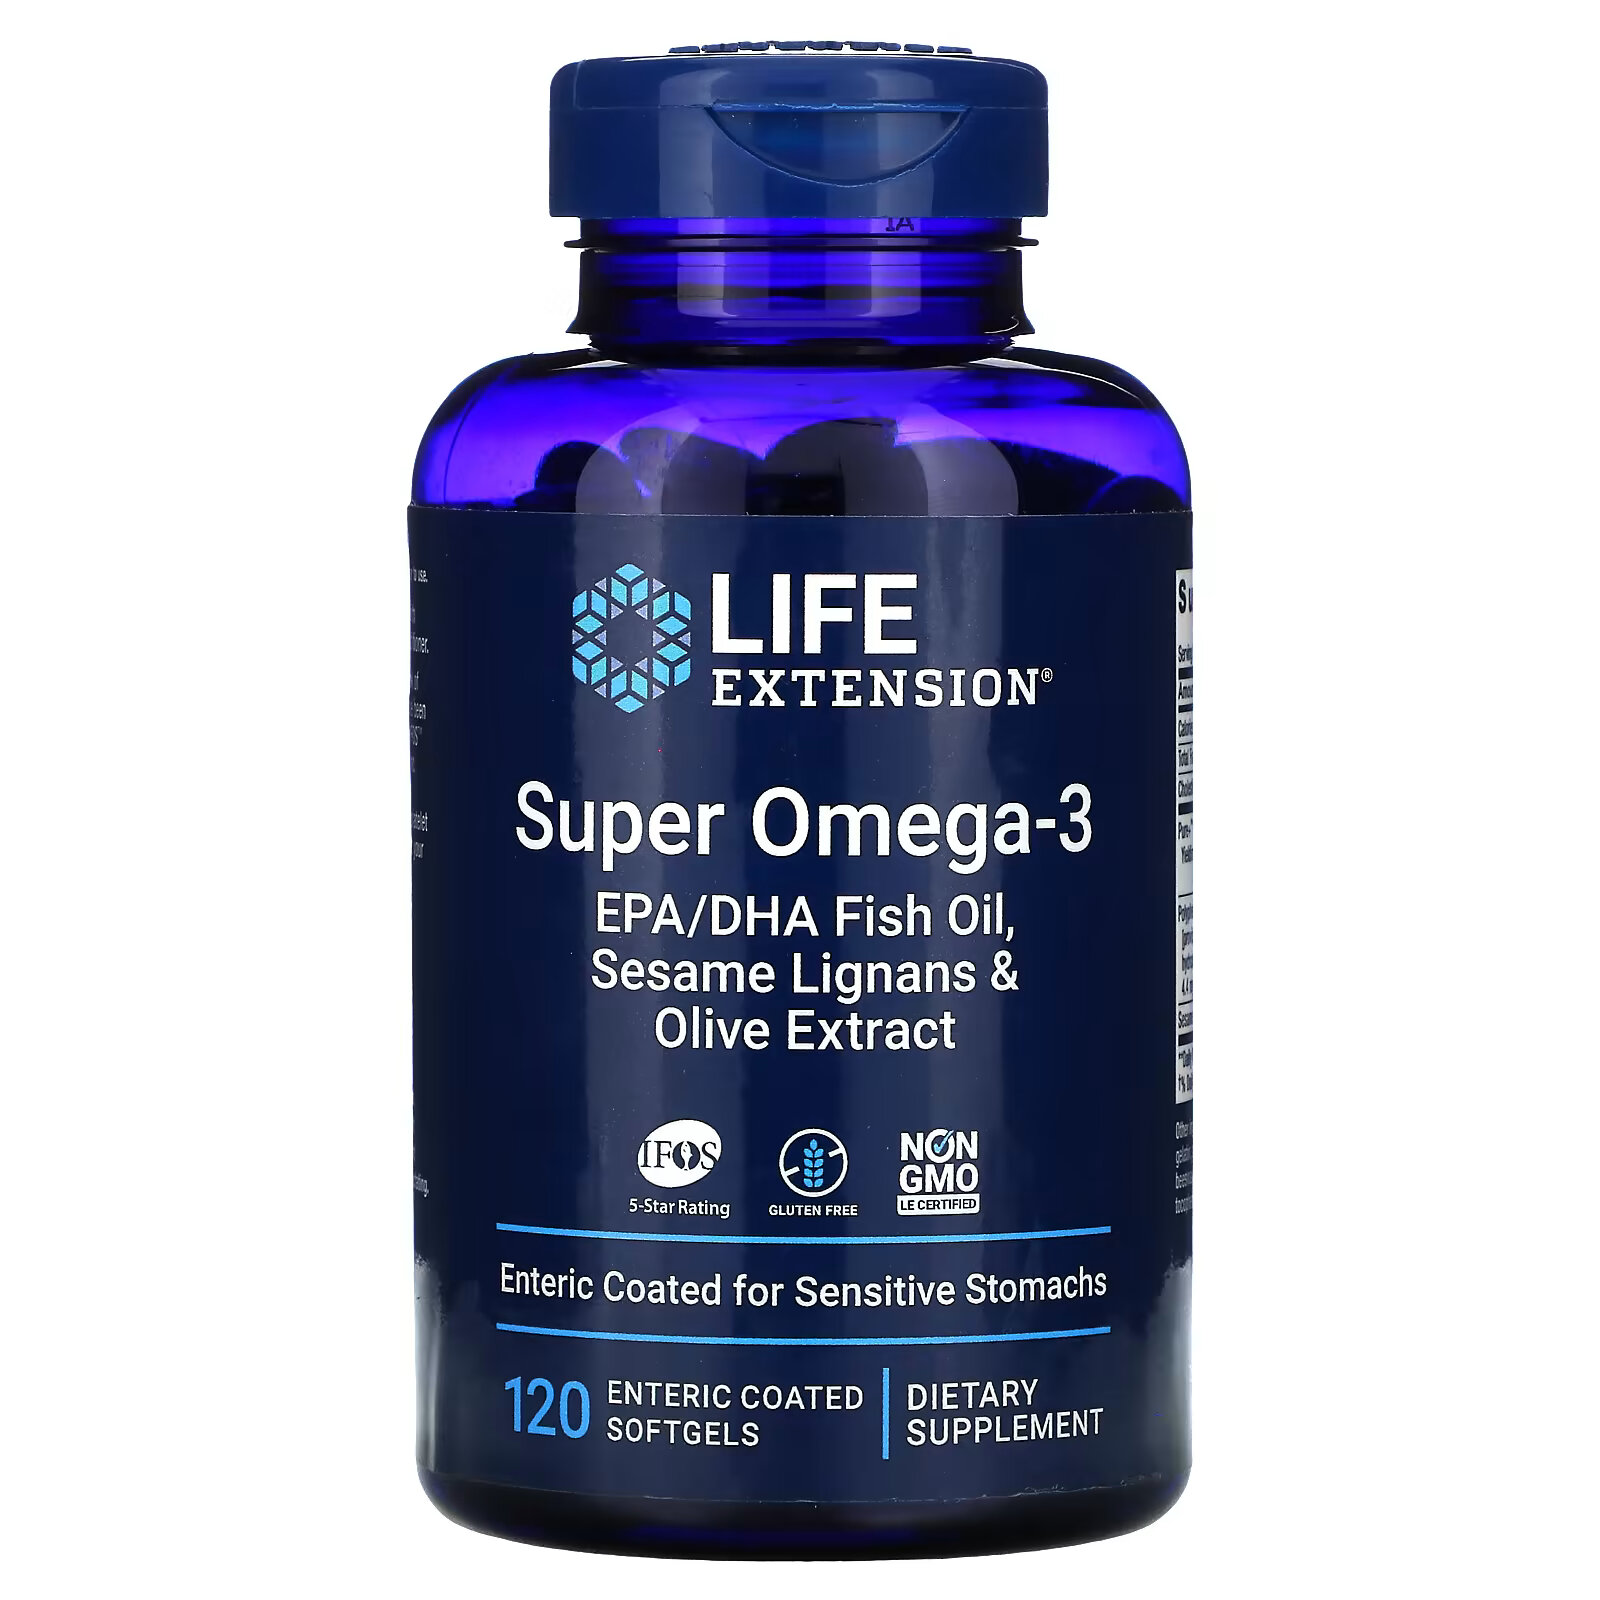 renew life critical omega ультраконцентрат омега кислот натуральный вкус апельсина 60 мягких таблеток покрытых кишечнорастворимой оболочкой Life Extension, супер омега-3, 120 мягких таблеток, покрытых кишечнорастворимой оболочкой